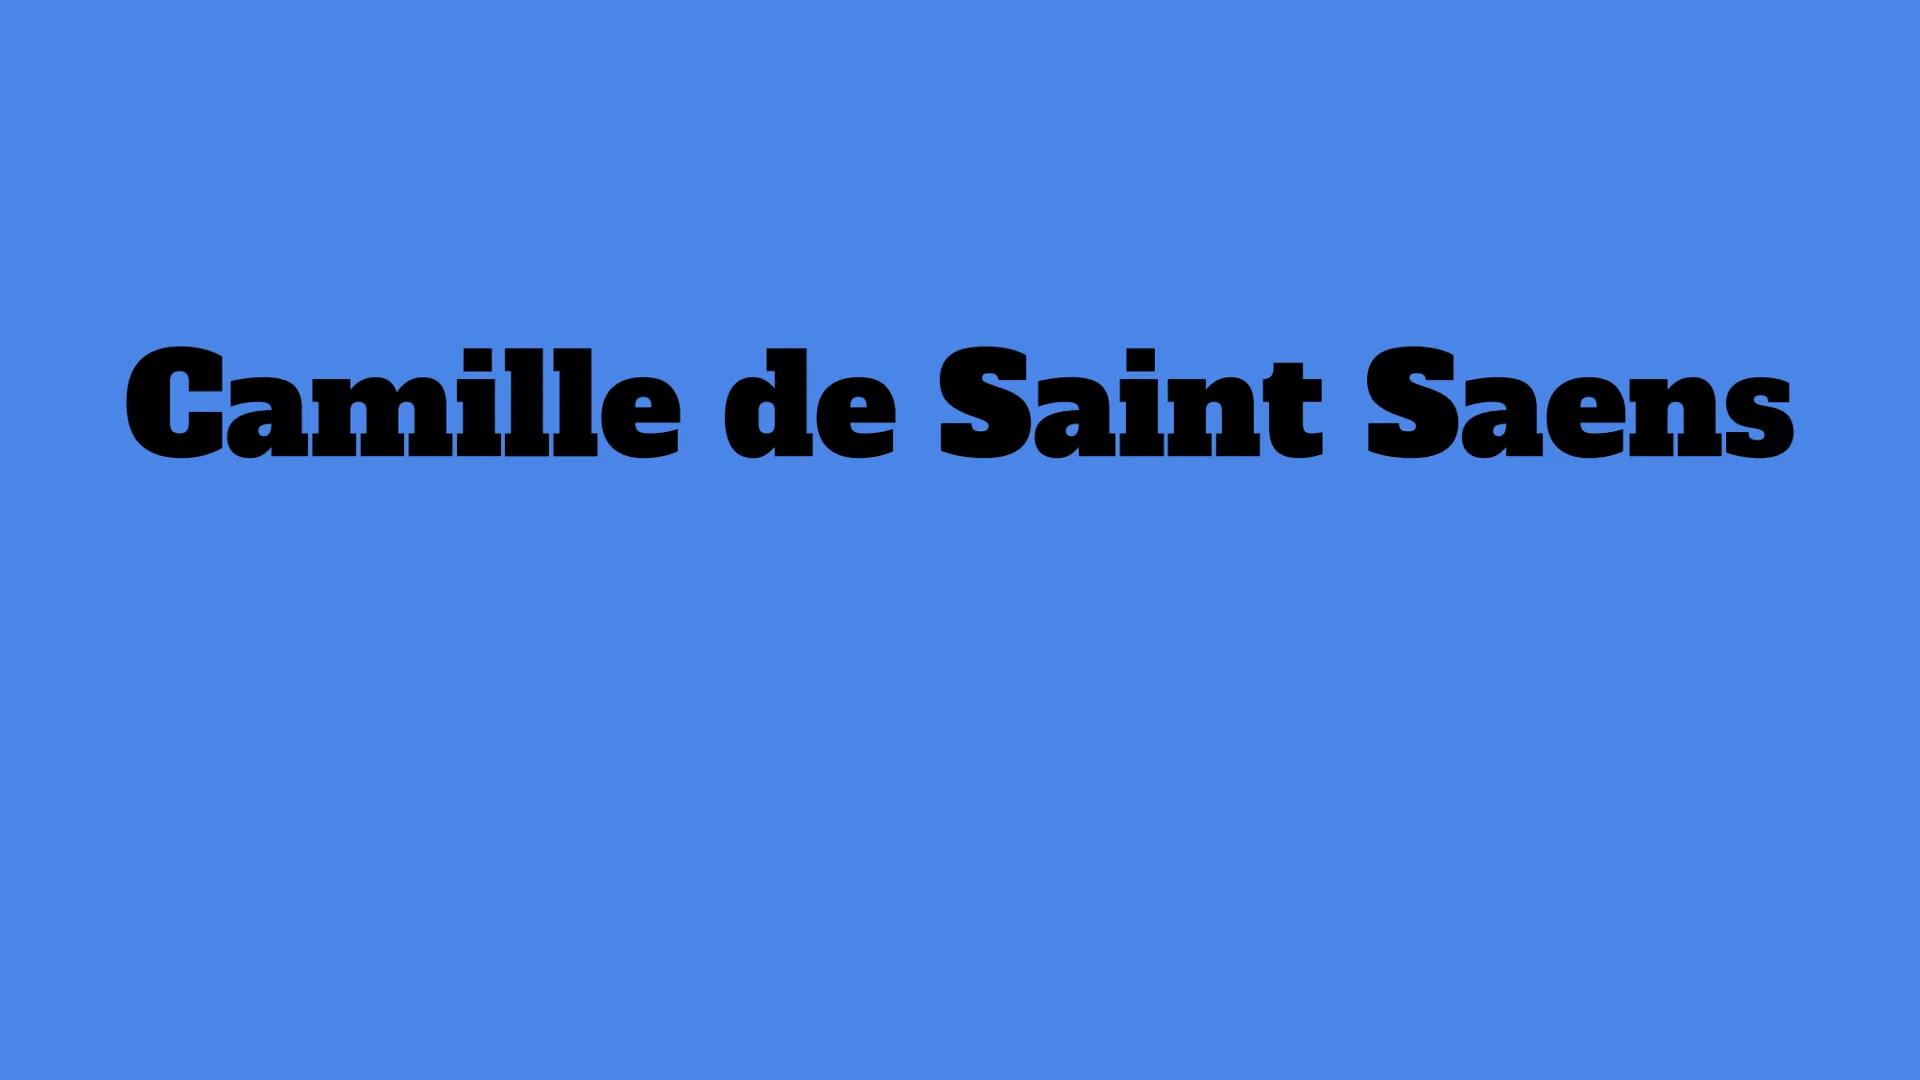 Camille de Saint Saens Camille de Saint Saens
Charles Camille Saint-Saëns (Parigi, 9 ottobre 1835
Algeri, 16 dicembre 1921) è stato un compo